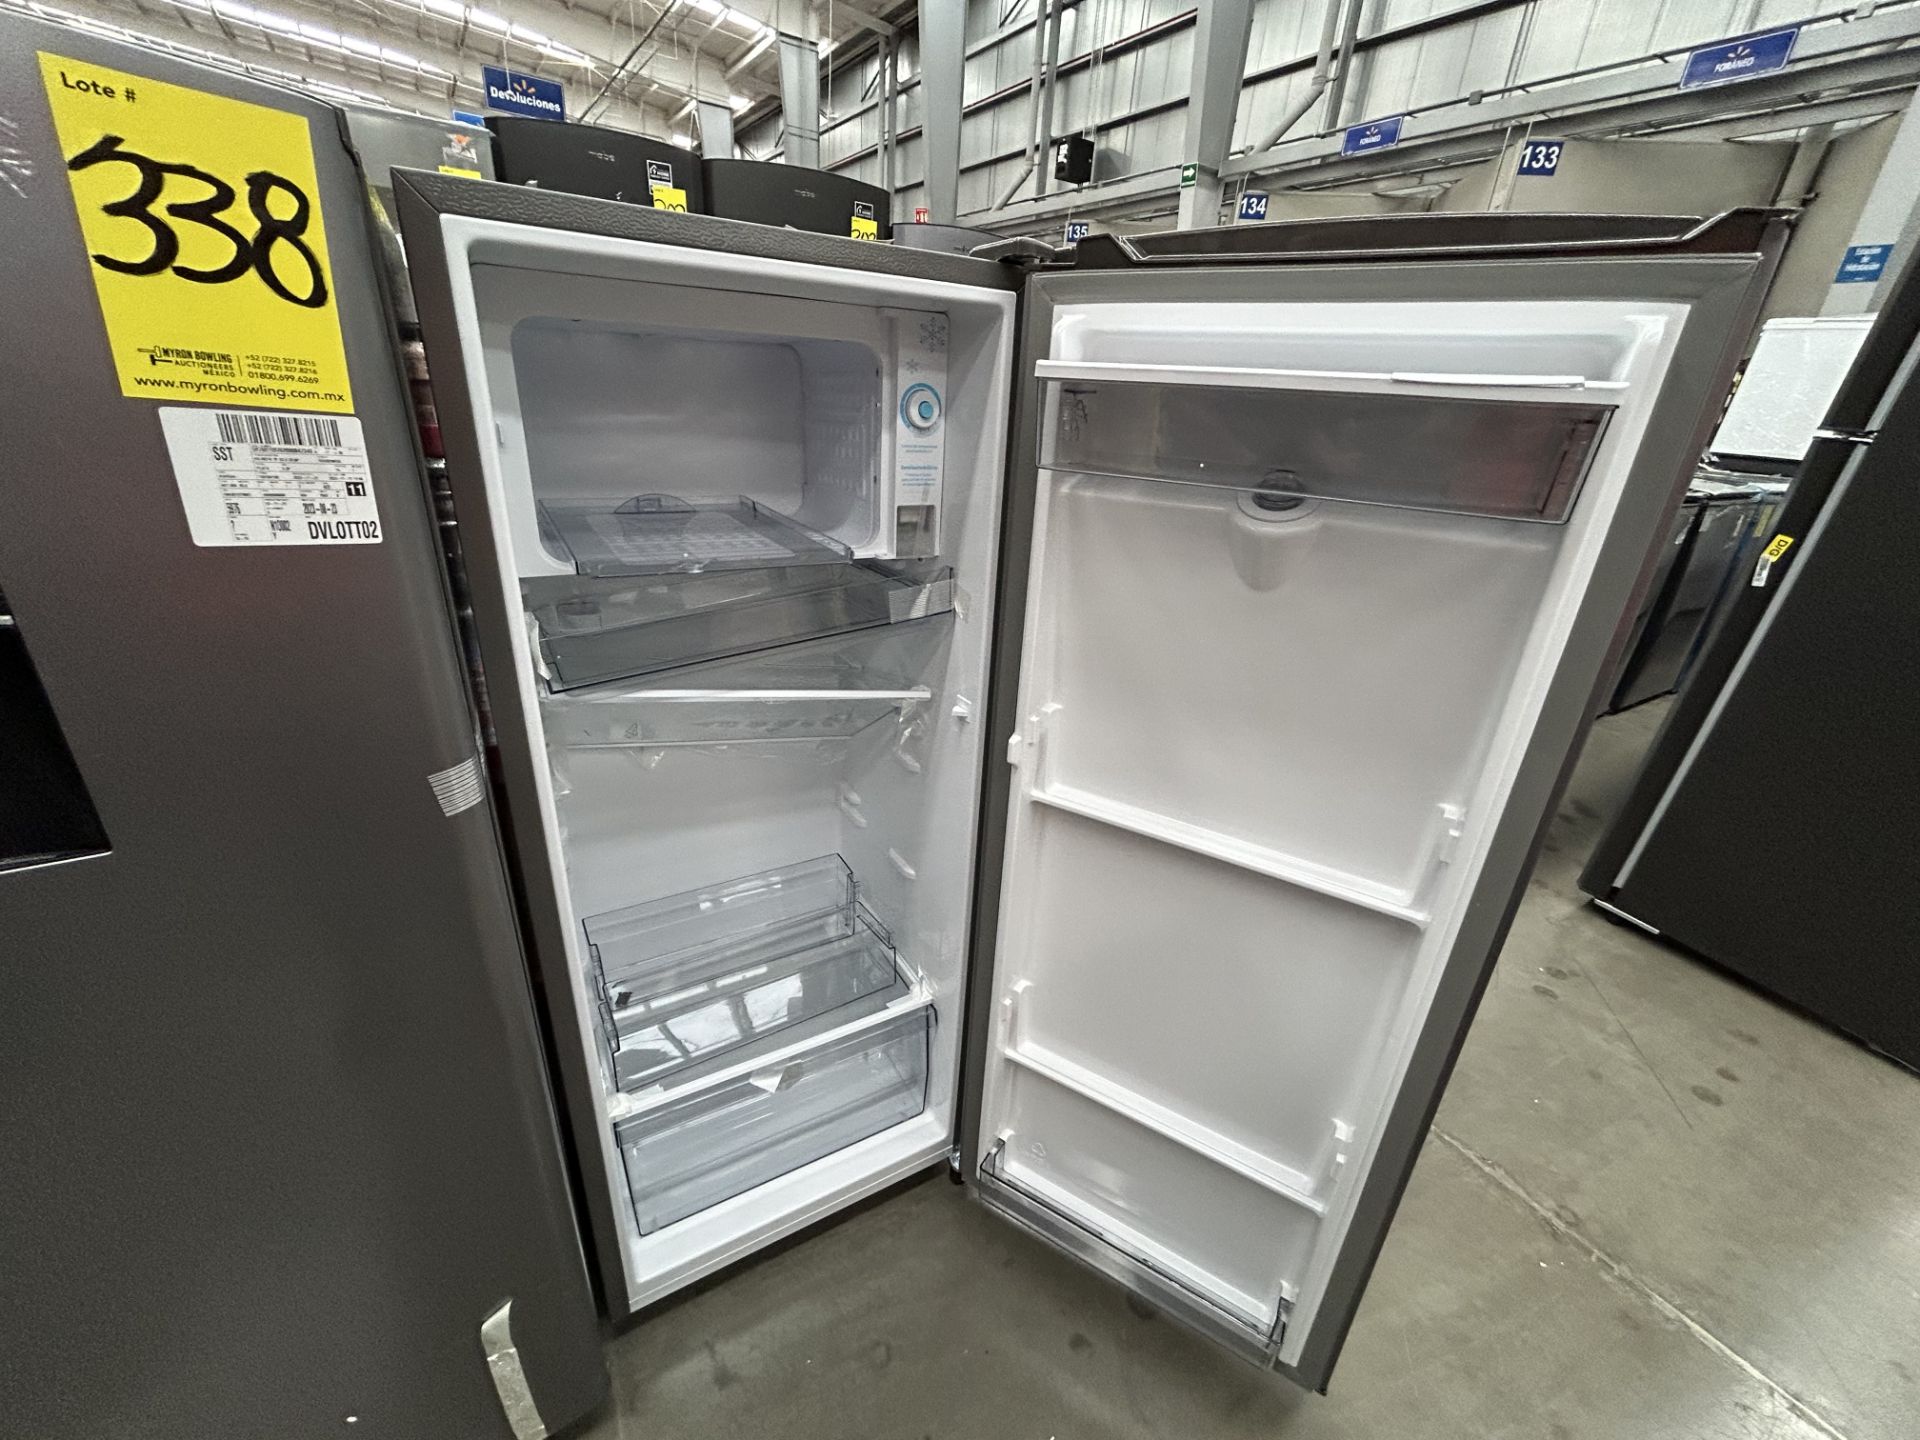 Lote de 2 refrigeradores contiene: 1 Refrigerador con dispensador de agua Marca HISENSE, Modelo RR6 - Image 4 of 6